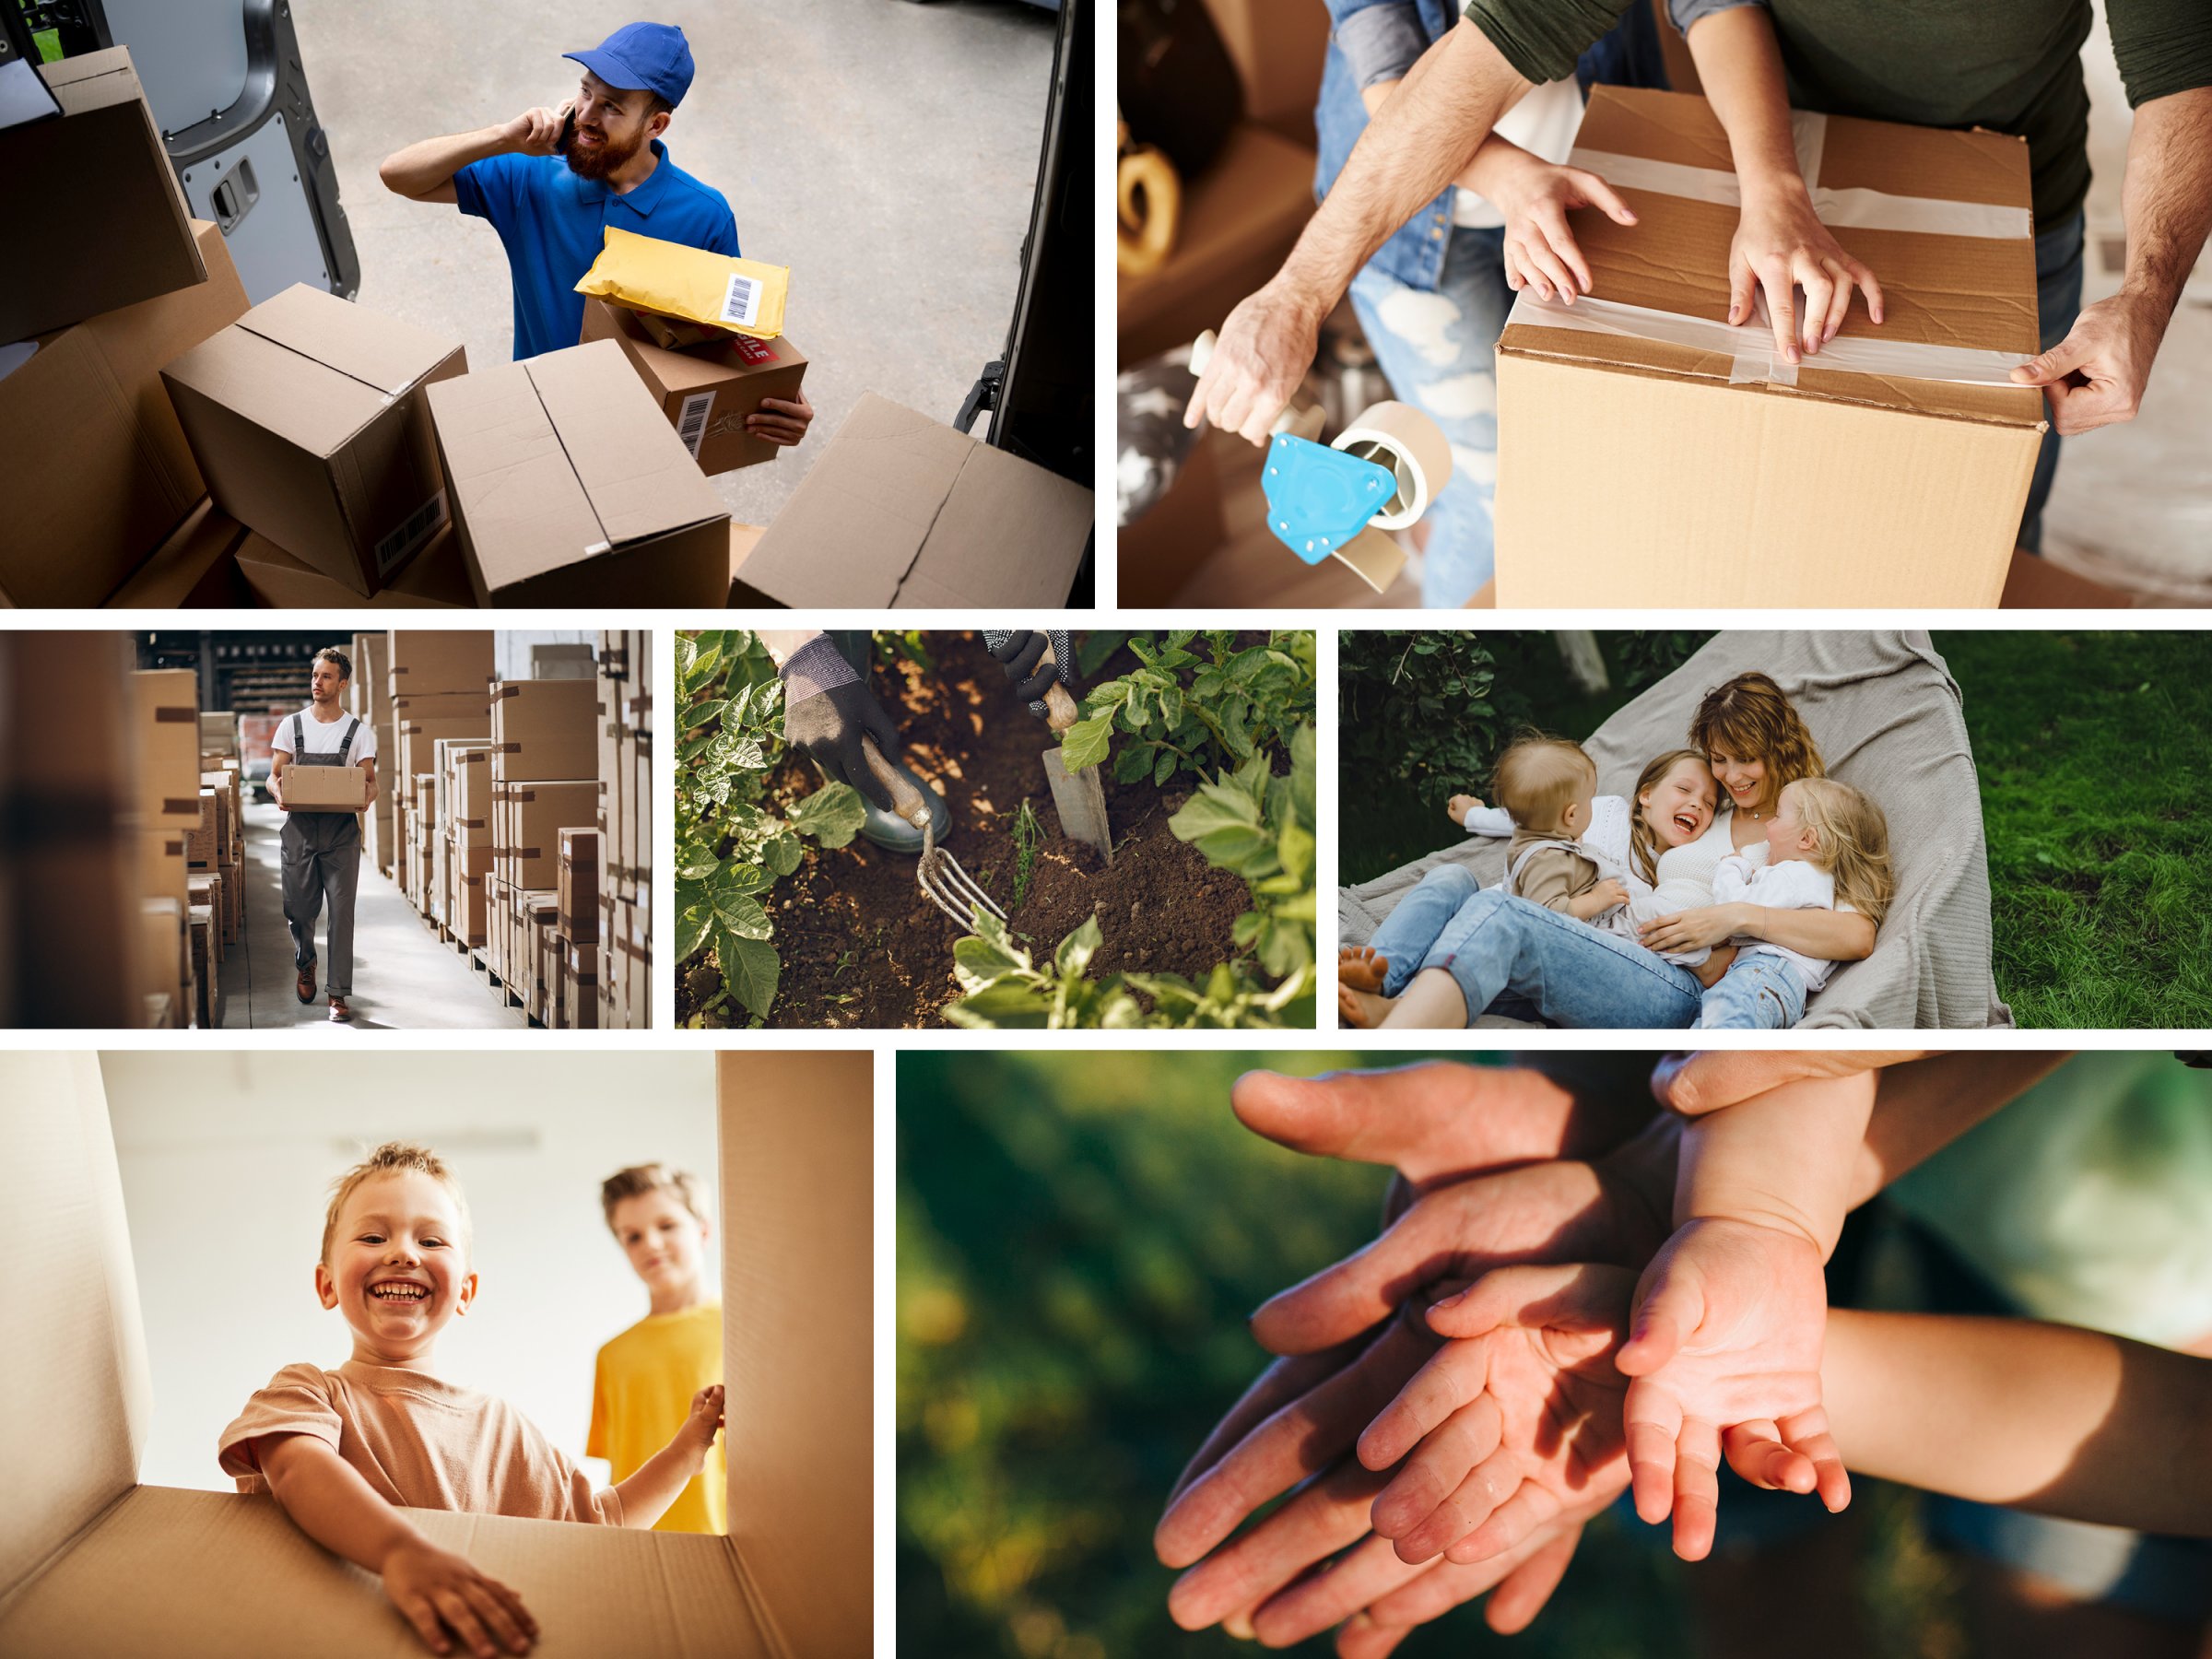 ine Collage aus Bildern der B2C-Welt, darunter ein Paketbote, Personen, die ein Paket packen, Familien im Grünen